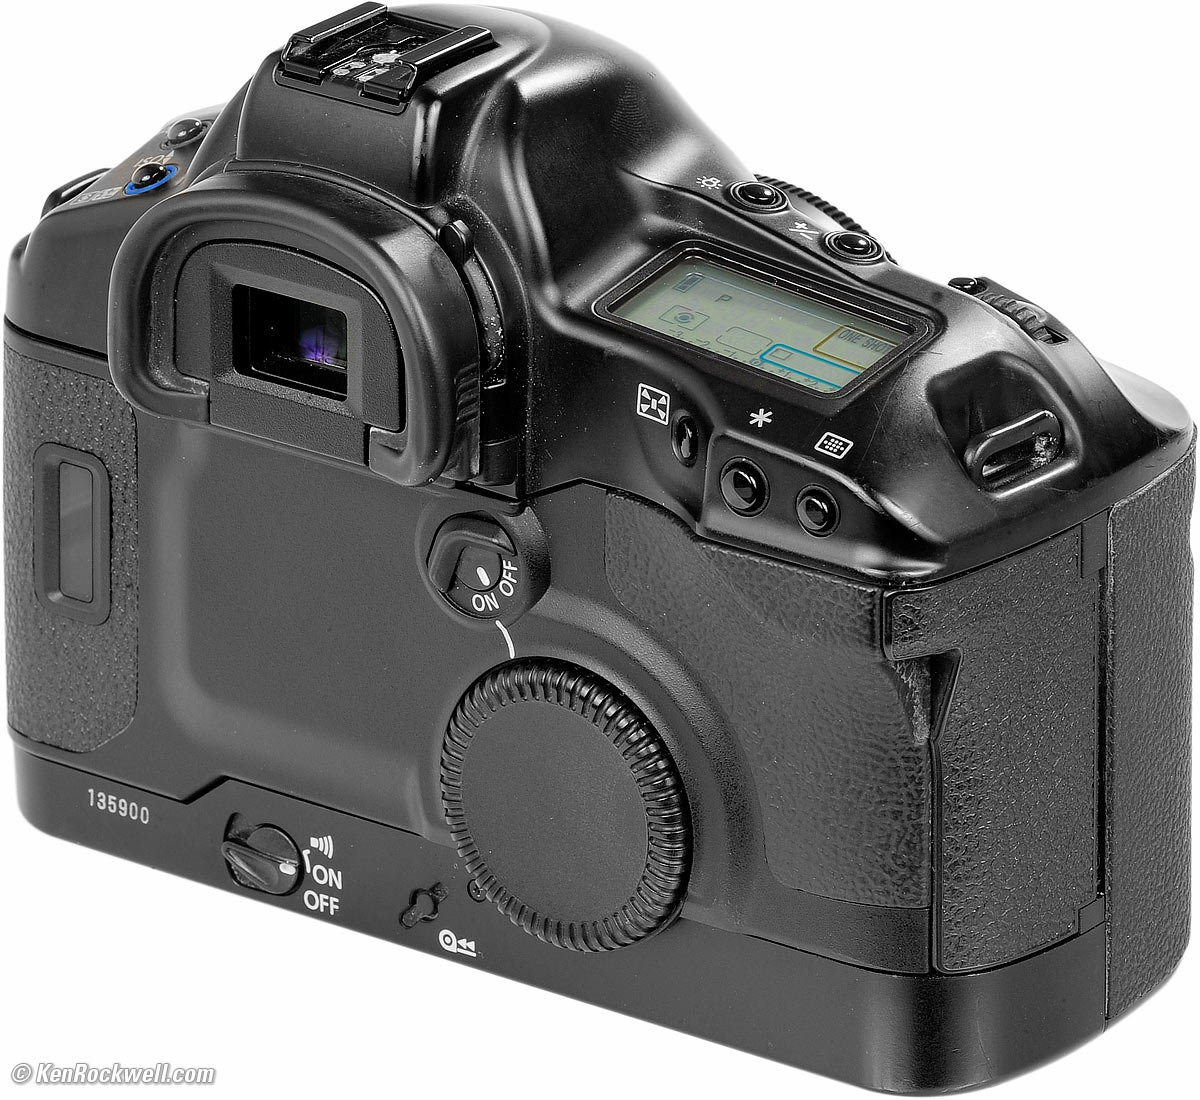 34560円 【人気沸騰】 Canon EOS-1V